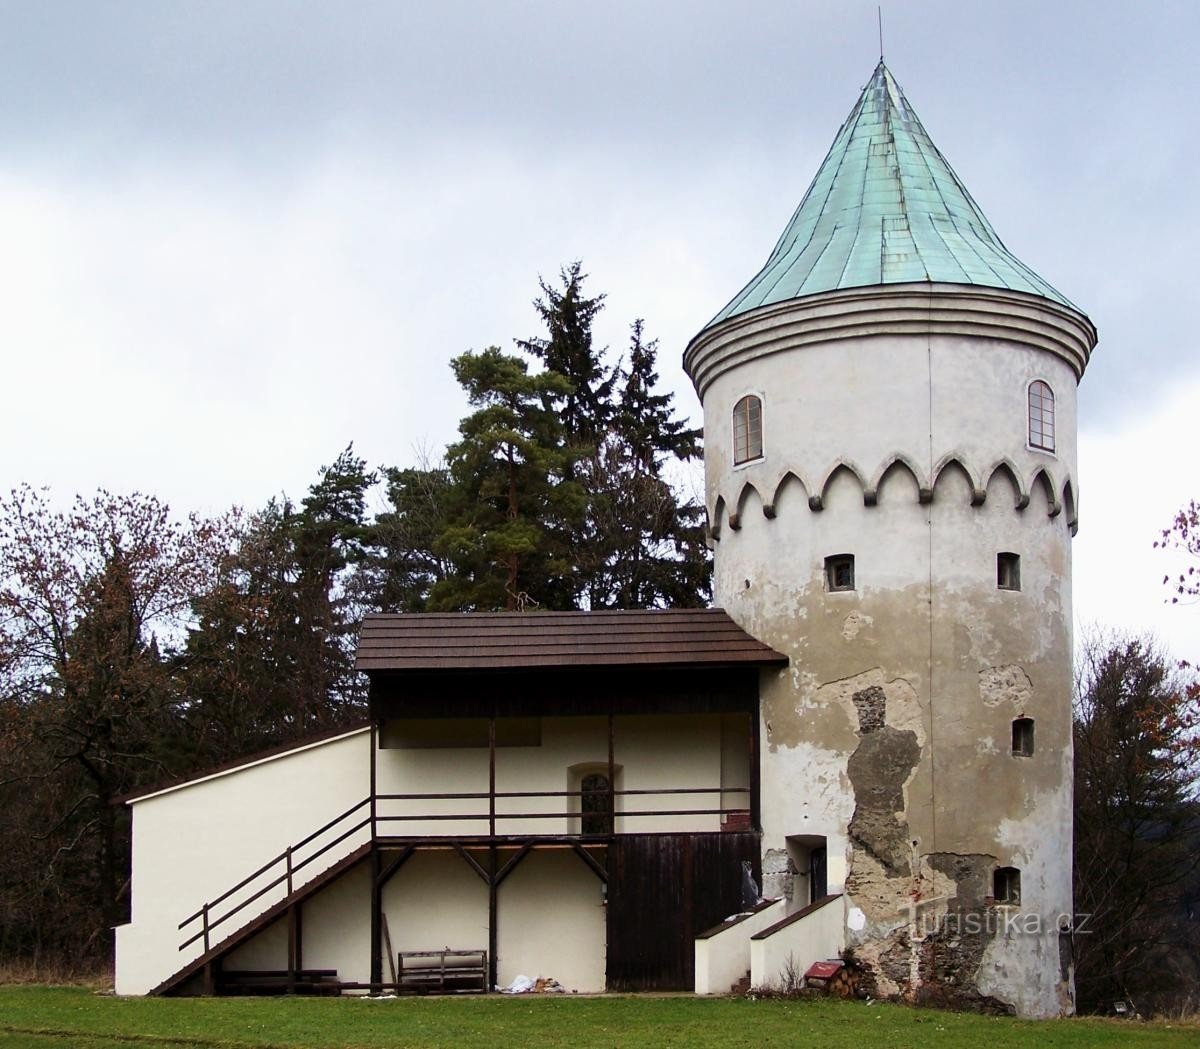 Dvorac Šlikovský